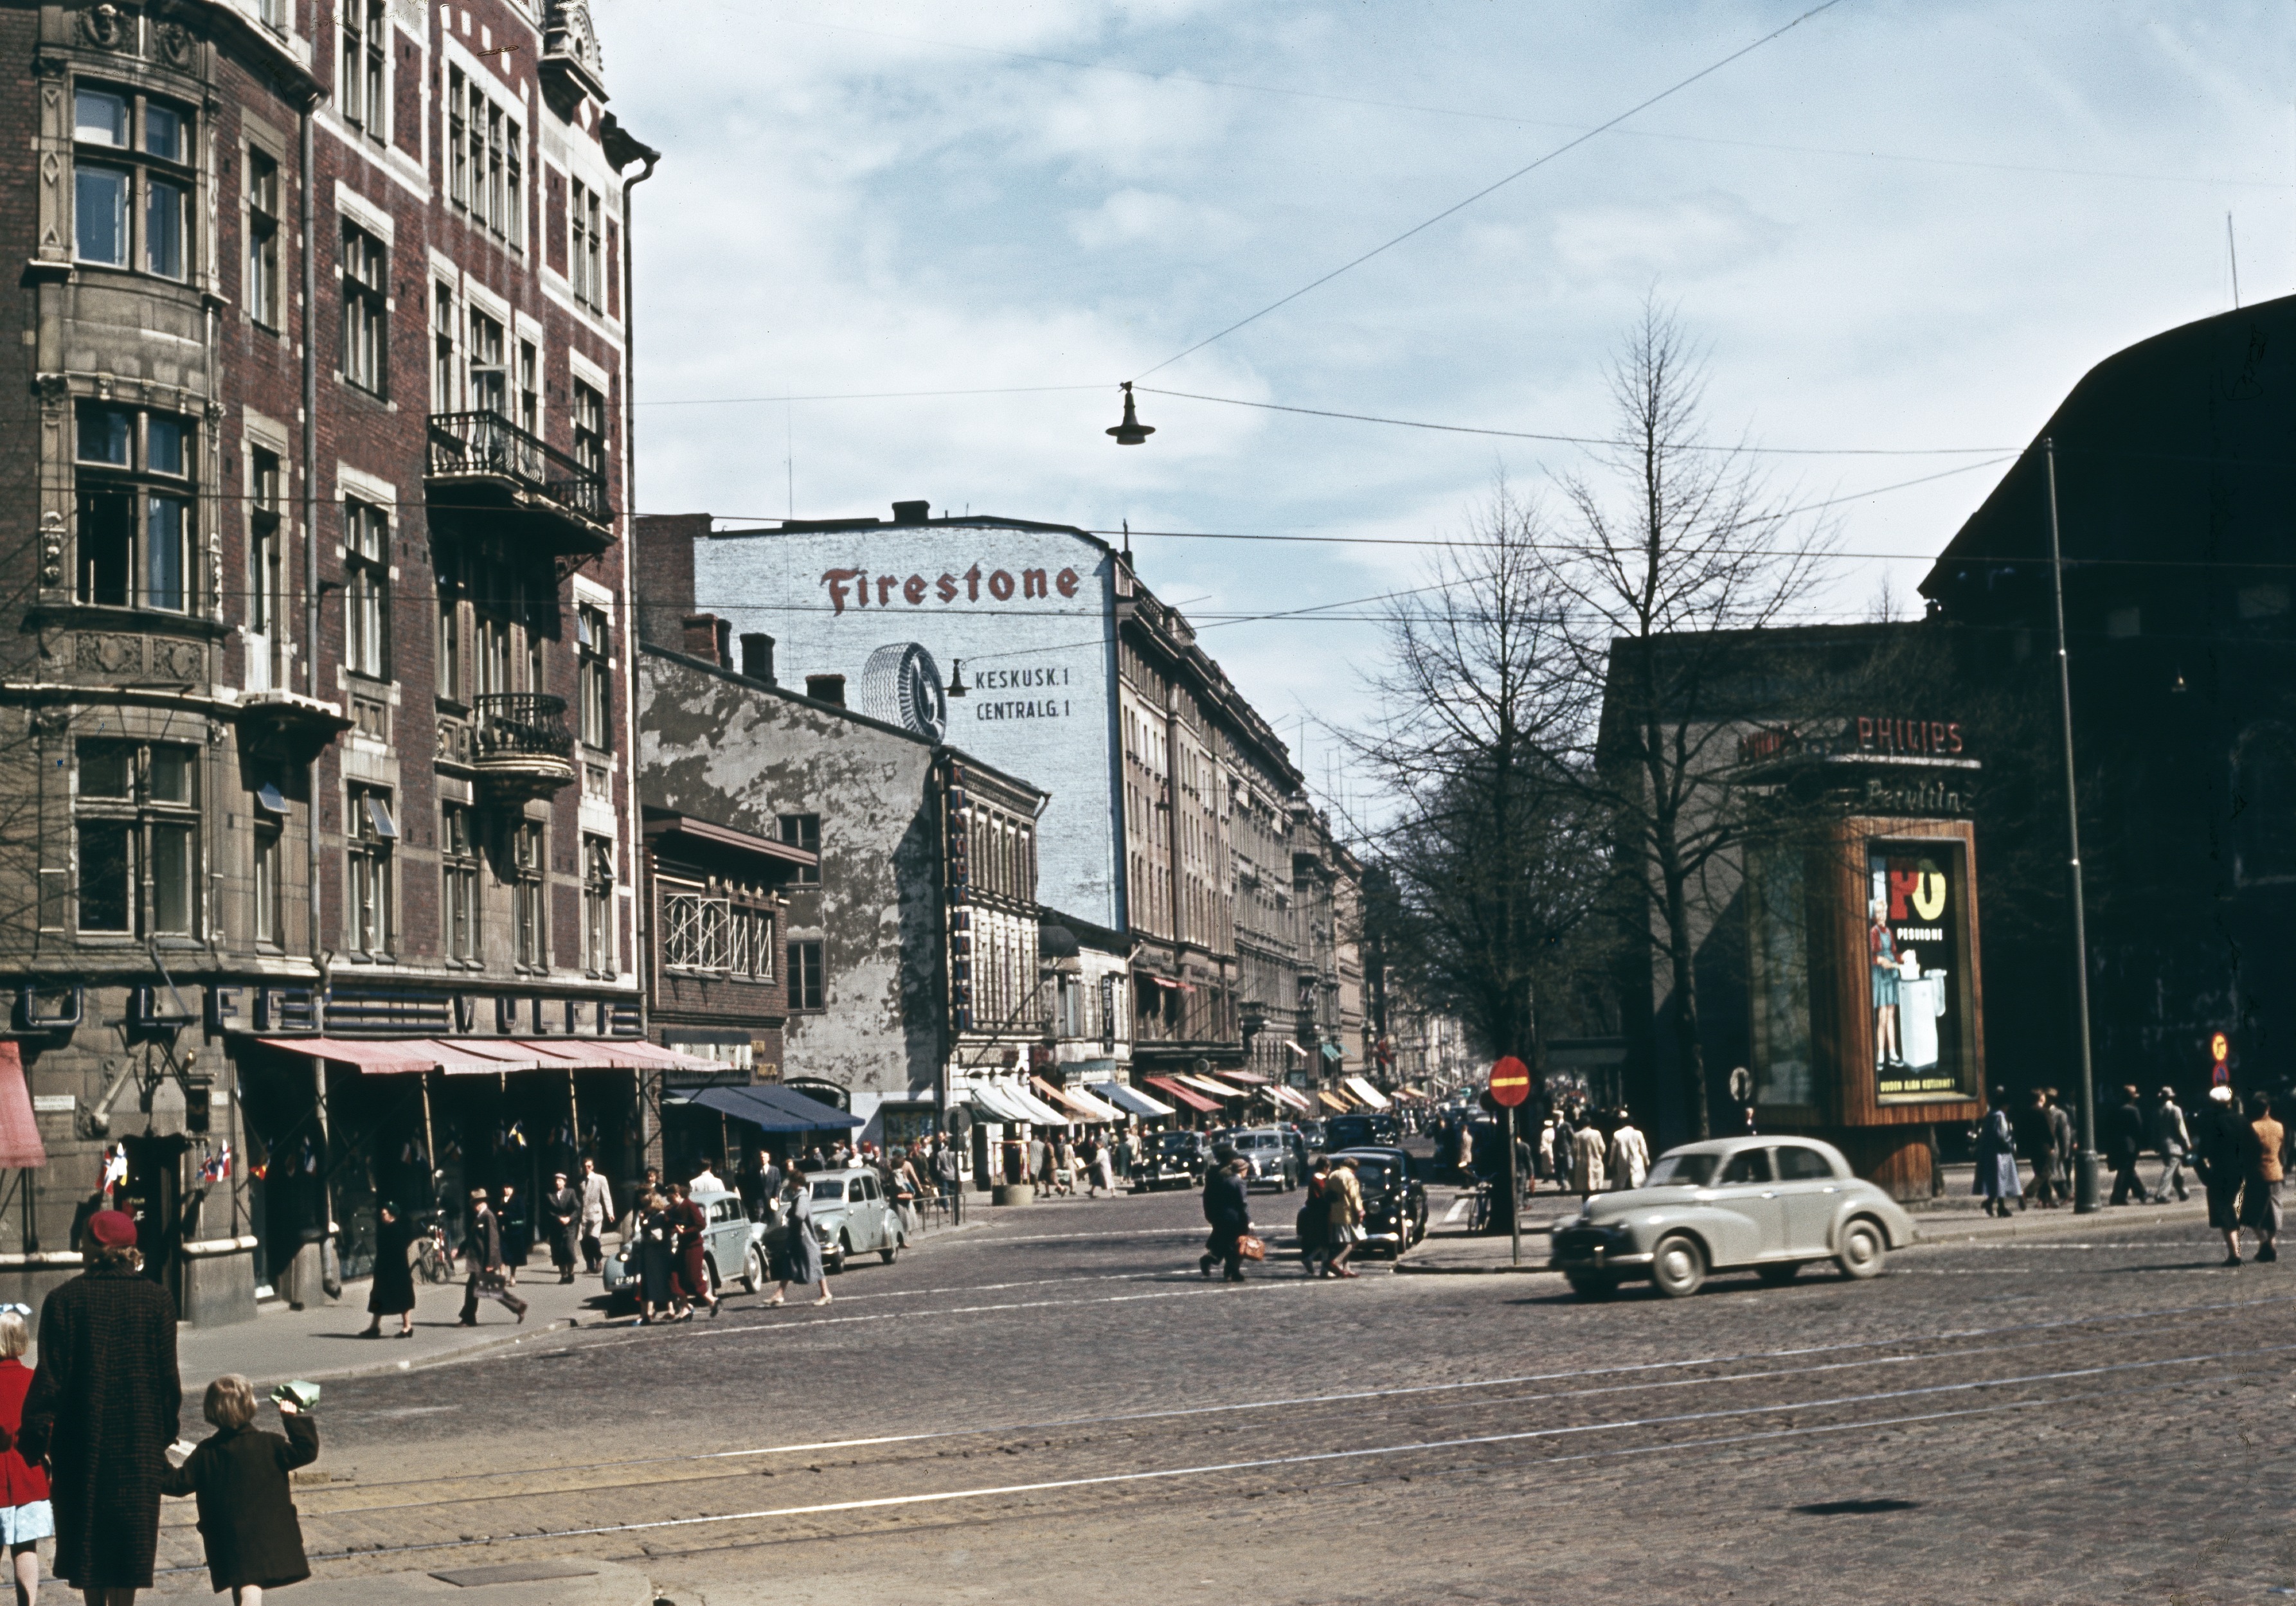 Wulffin kulma, Mannerheimintien - Pohjoisesplanadin kulma. 1950-luvun autoja ja mainoksia (Upo, Firestone, Philips). Pohjoisesplanadi 41, 39, 37.